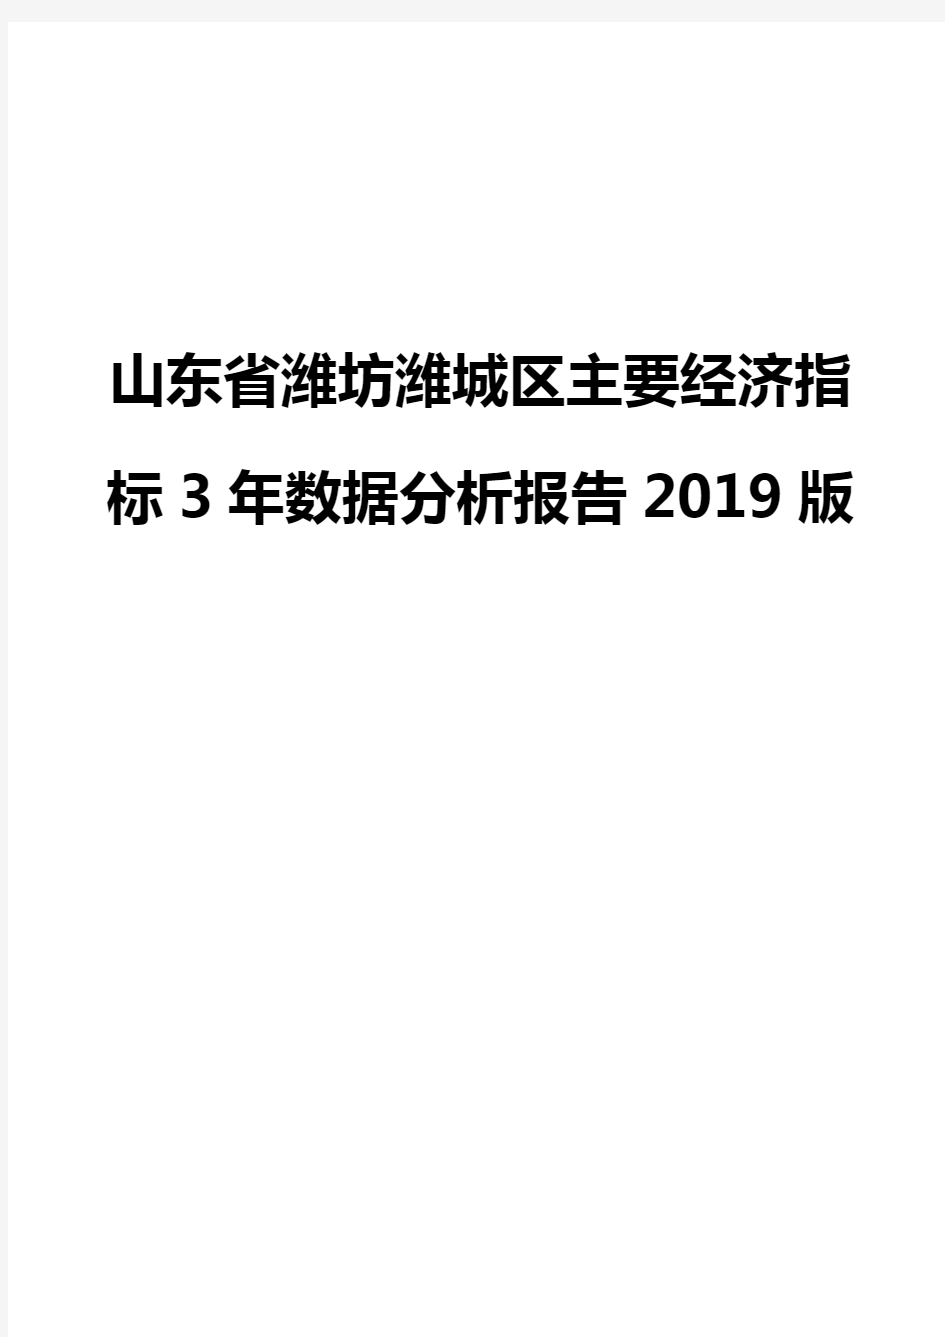 山东省潍坊潍城区主要经济指标3年数据分析报告2019版